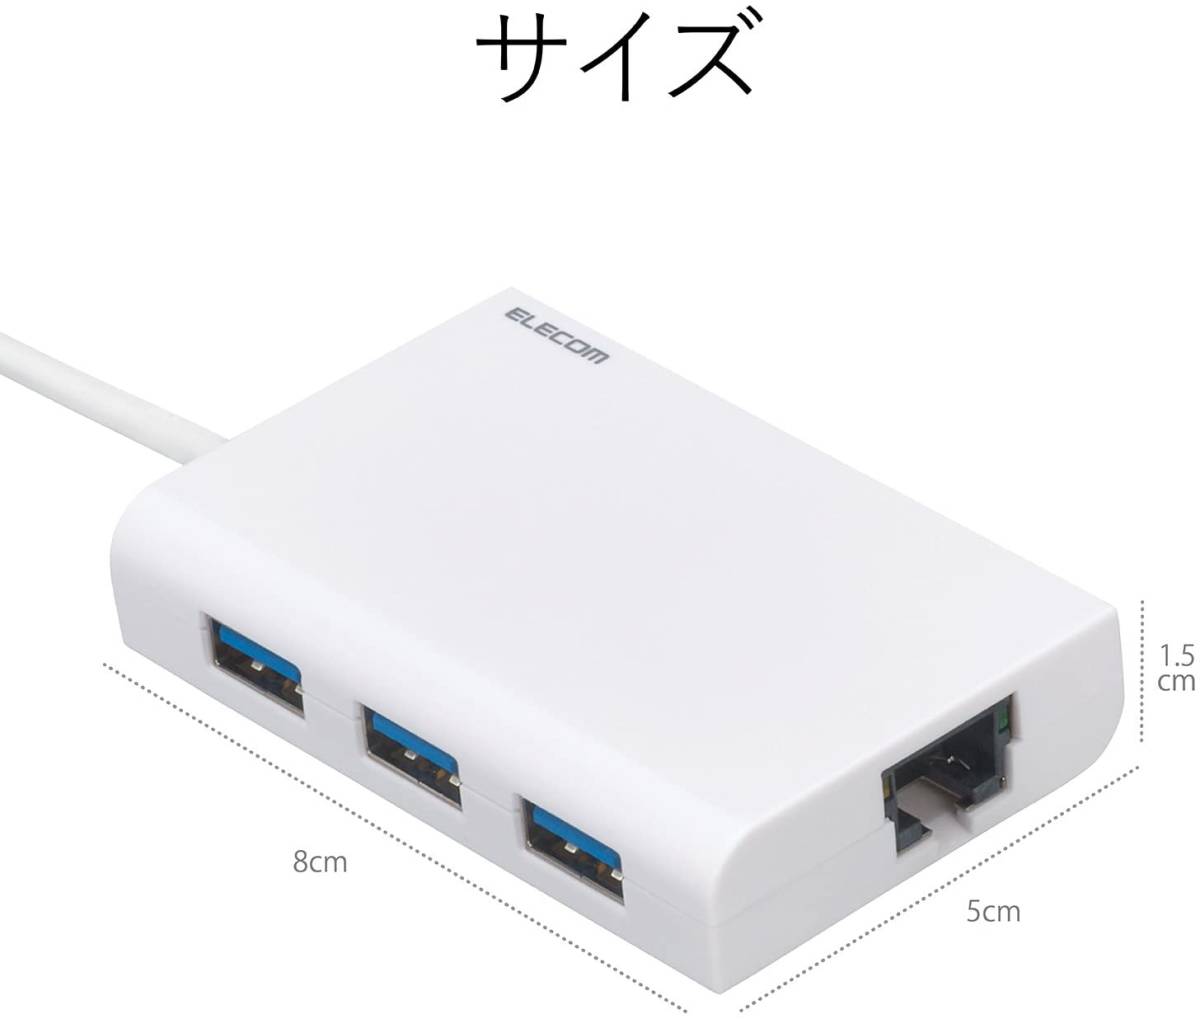 未使用☆ELECOM エレコム 有線LANアダプター USB-A USB2.0 USBハブ3ポート付 ホワイト EDC-FUA2H-W